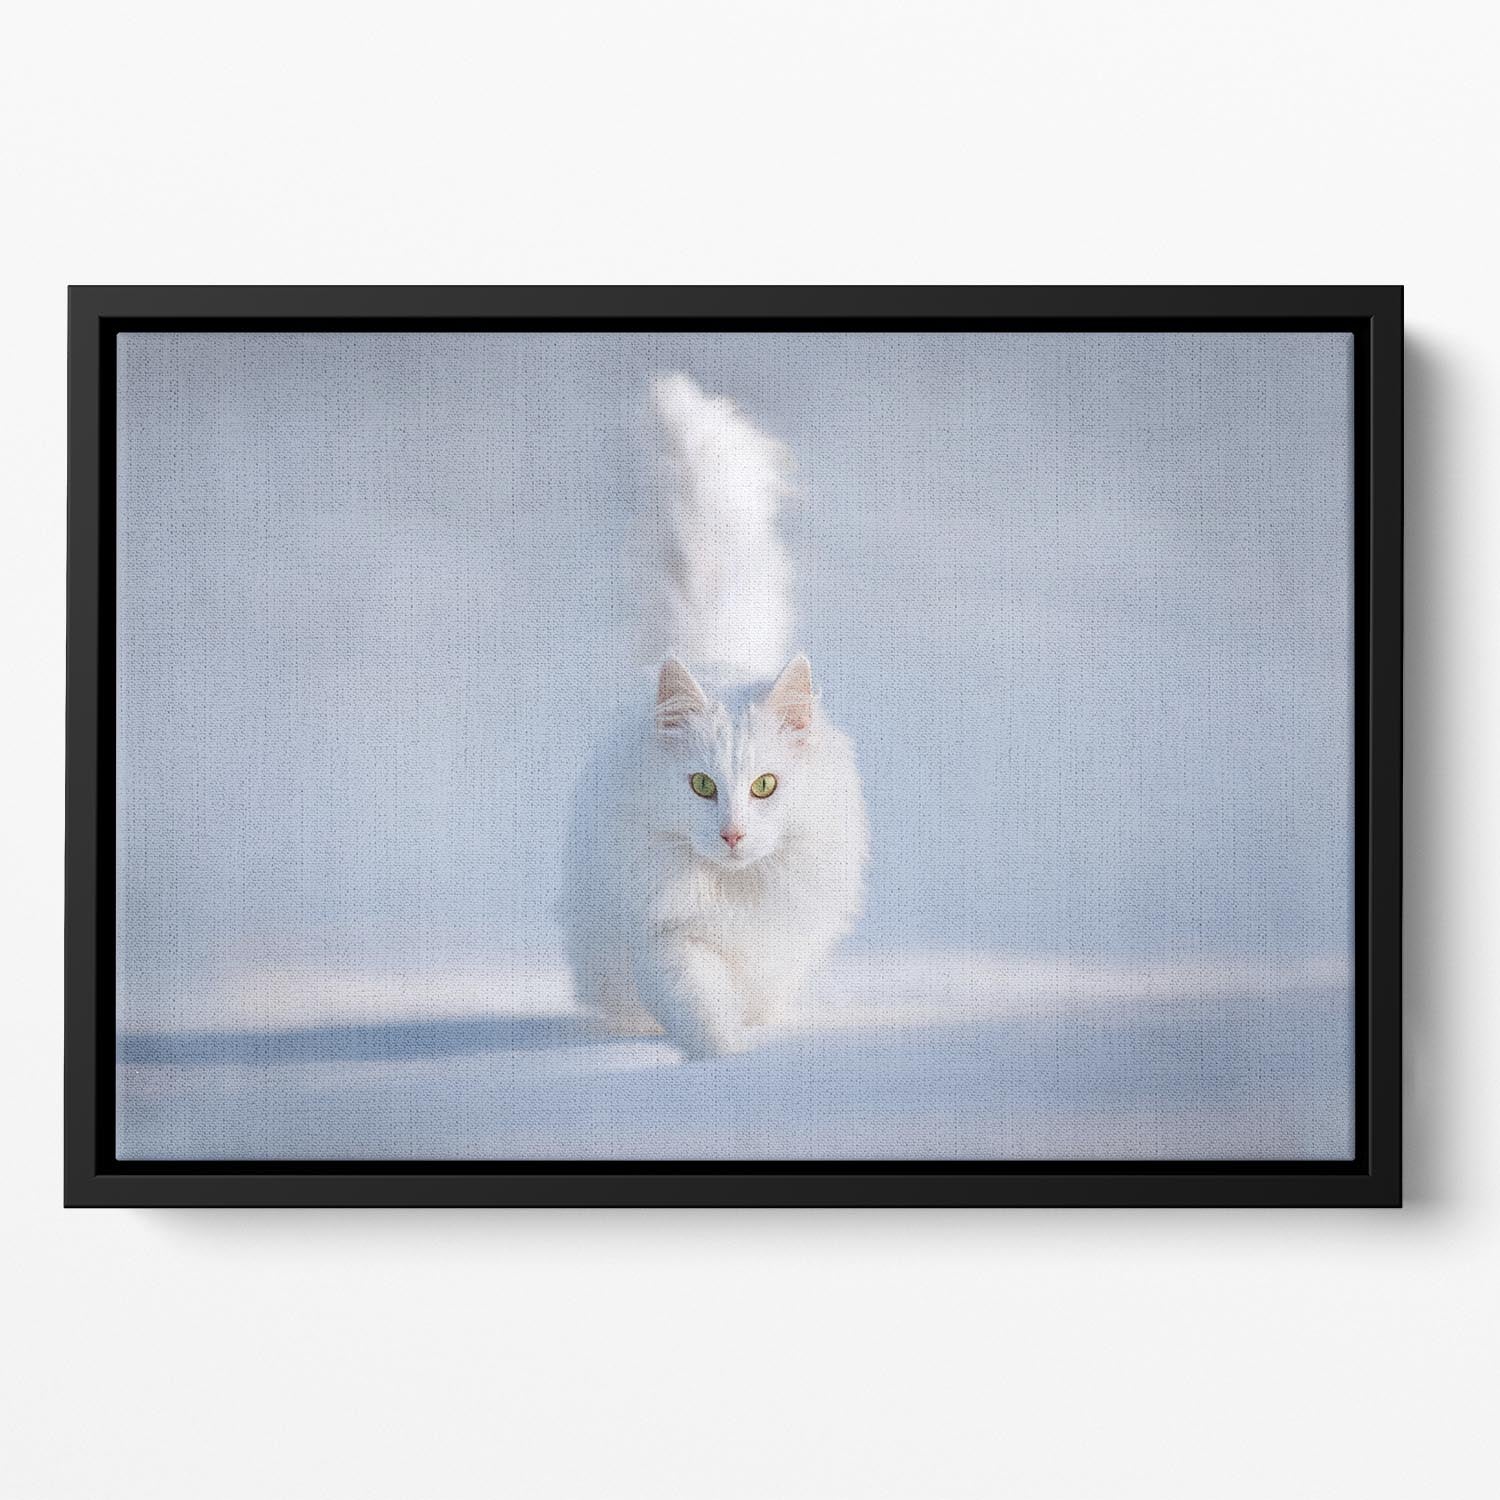 White Kitten Running In Snow Floating Framed Canvas - Canvas Art Rocks - 2